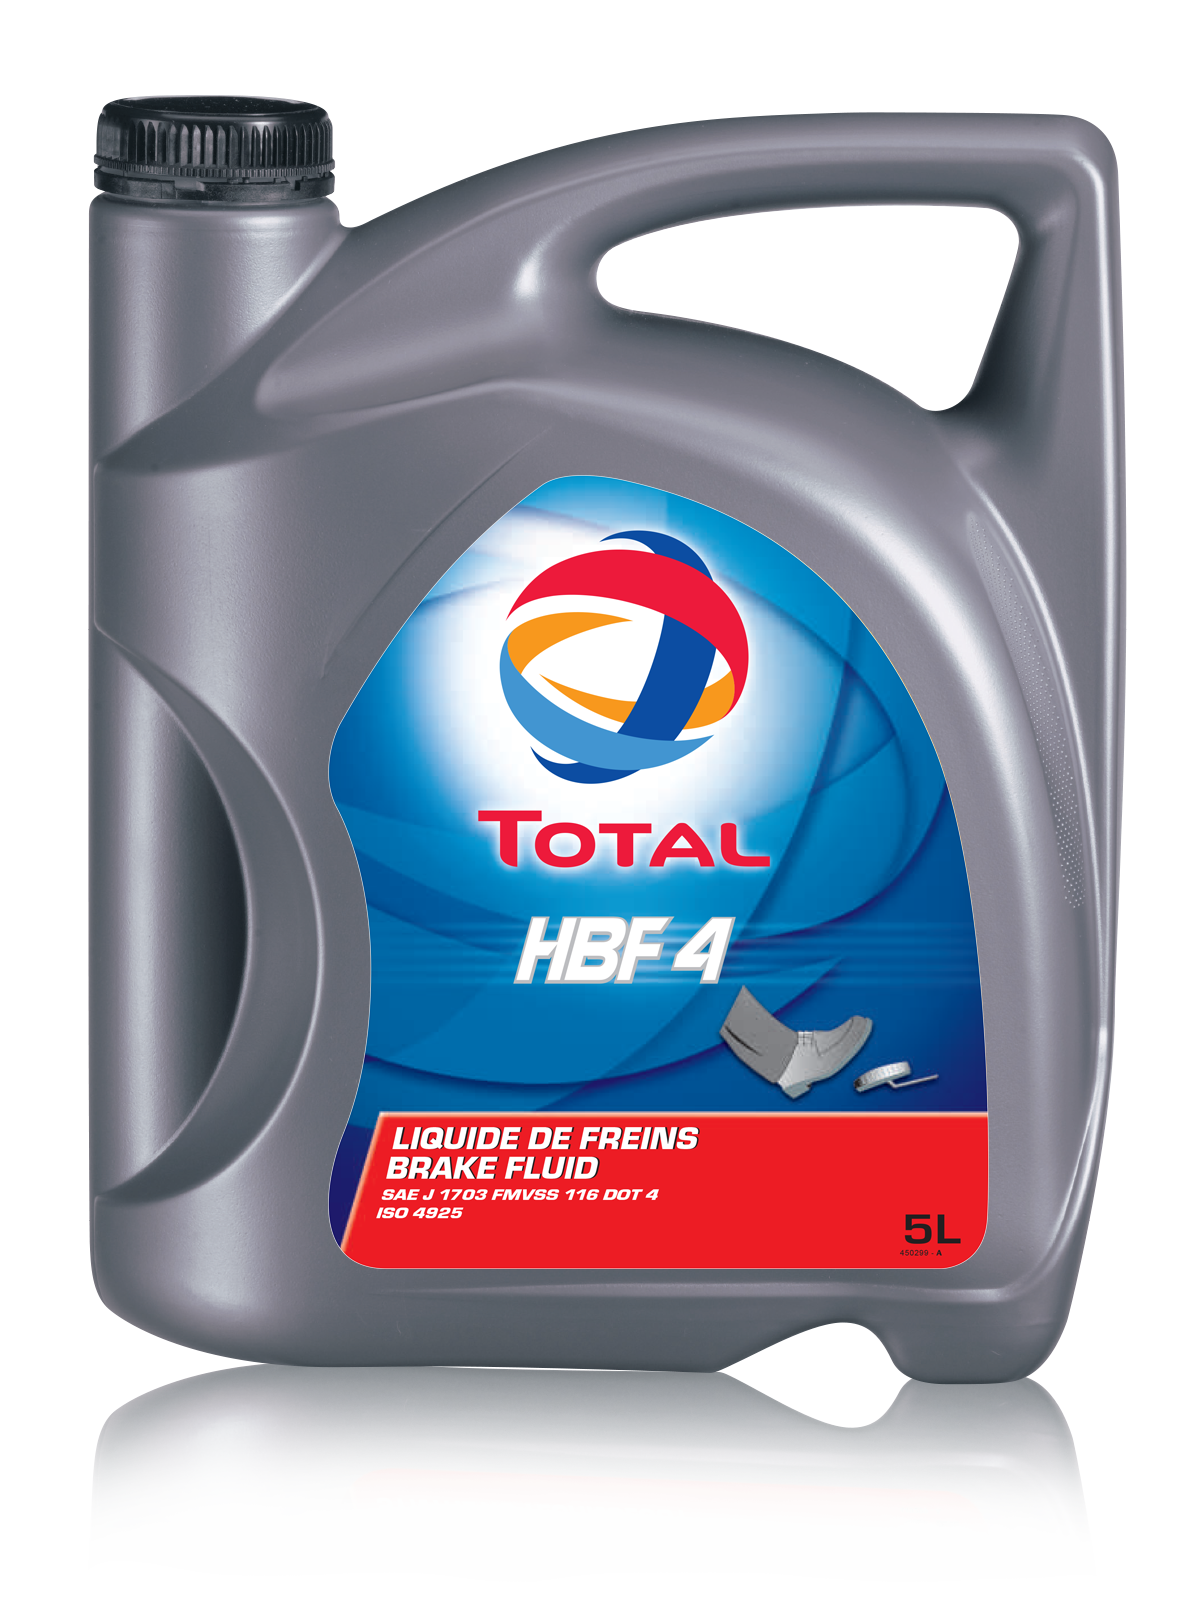 Купить запчасть TOTAL - 150511 Трансмиссионное масло Hbf 4